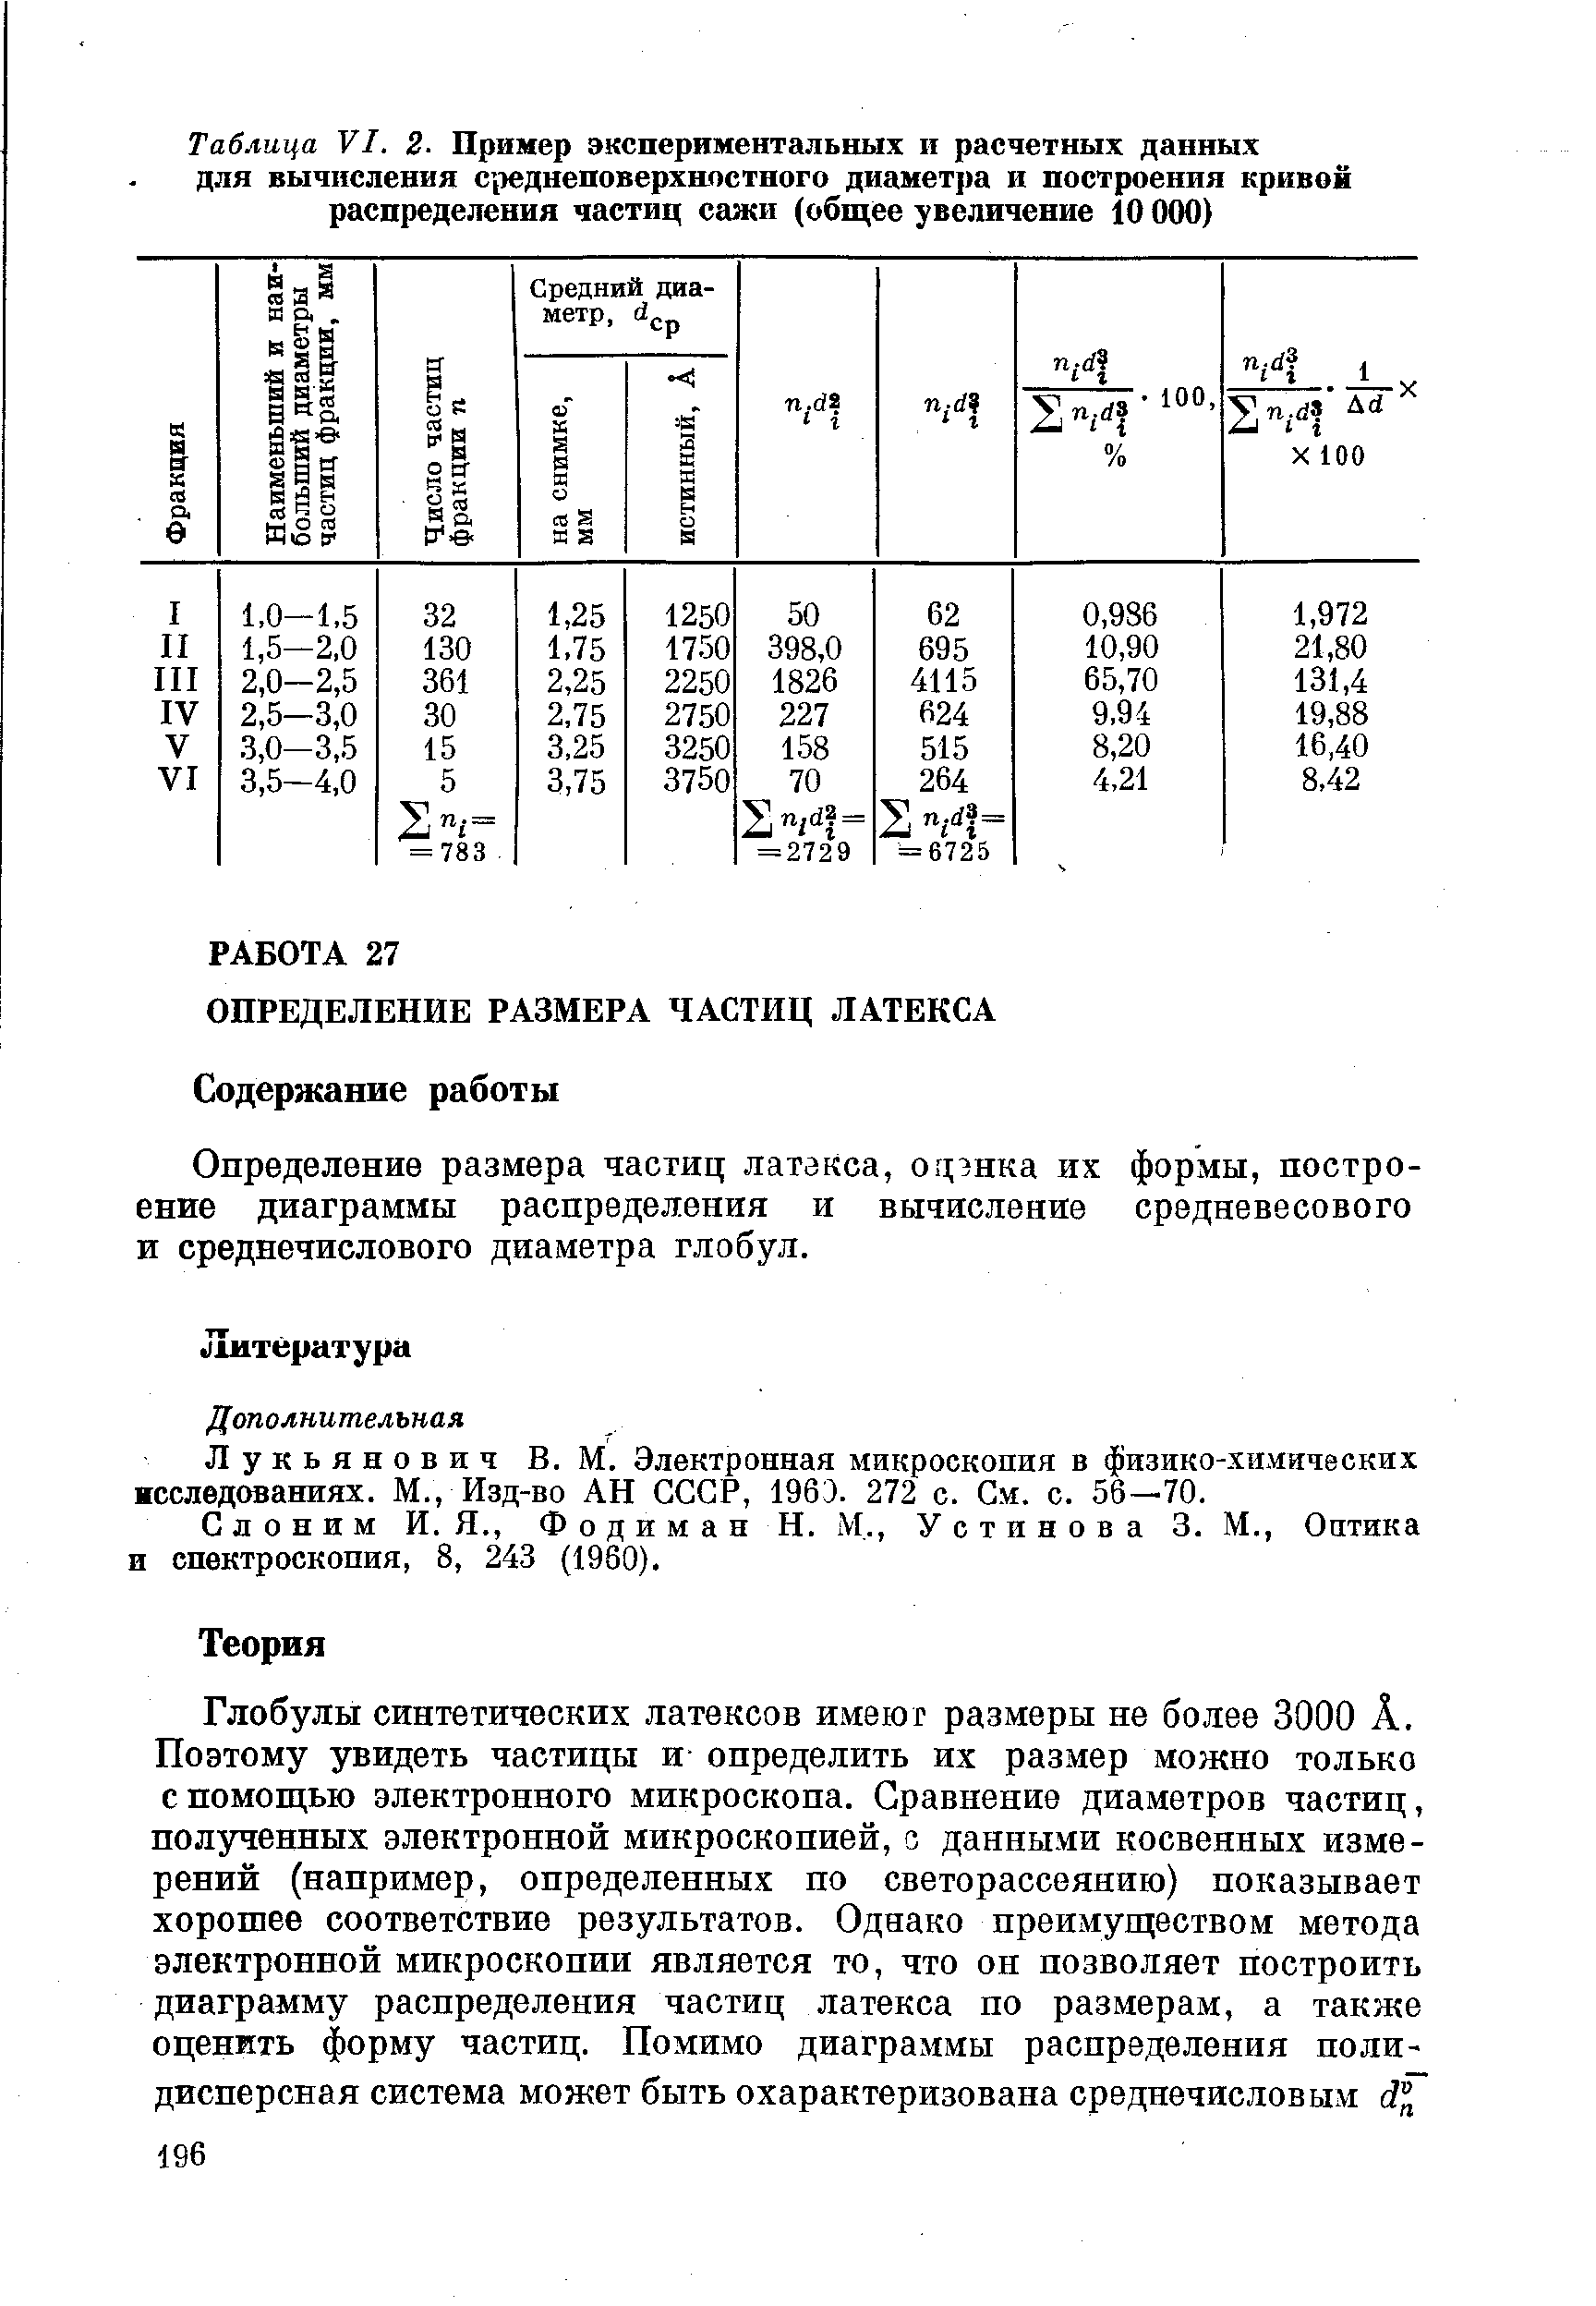 Слоним И. Я., Фодиман И. М., Устинова 3. М., Оптика и спектроскопия, 8, 243 (1960).